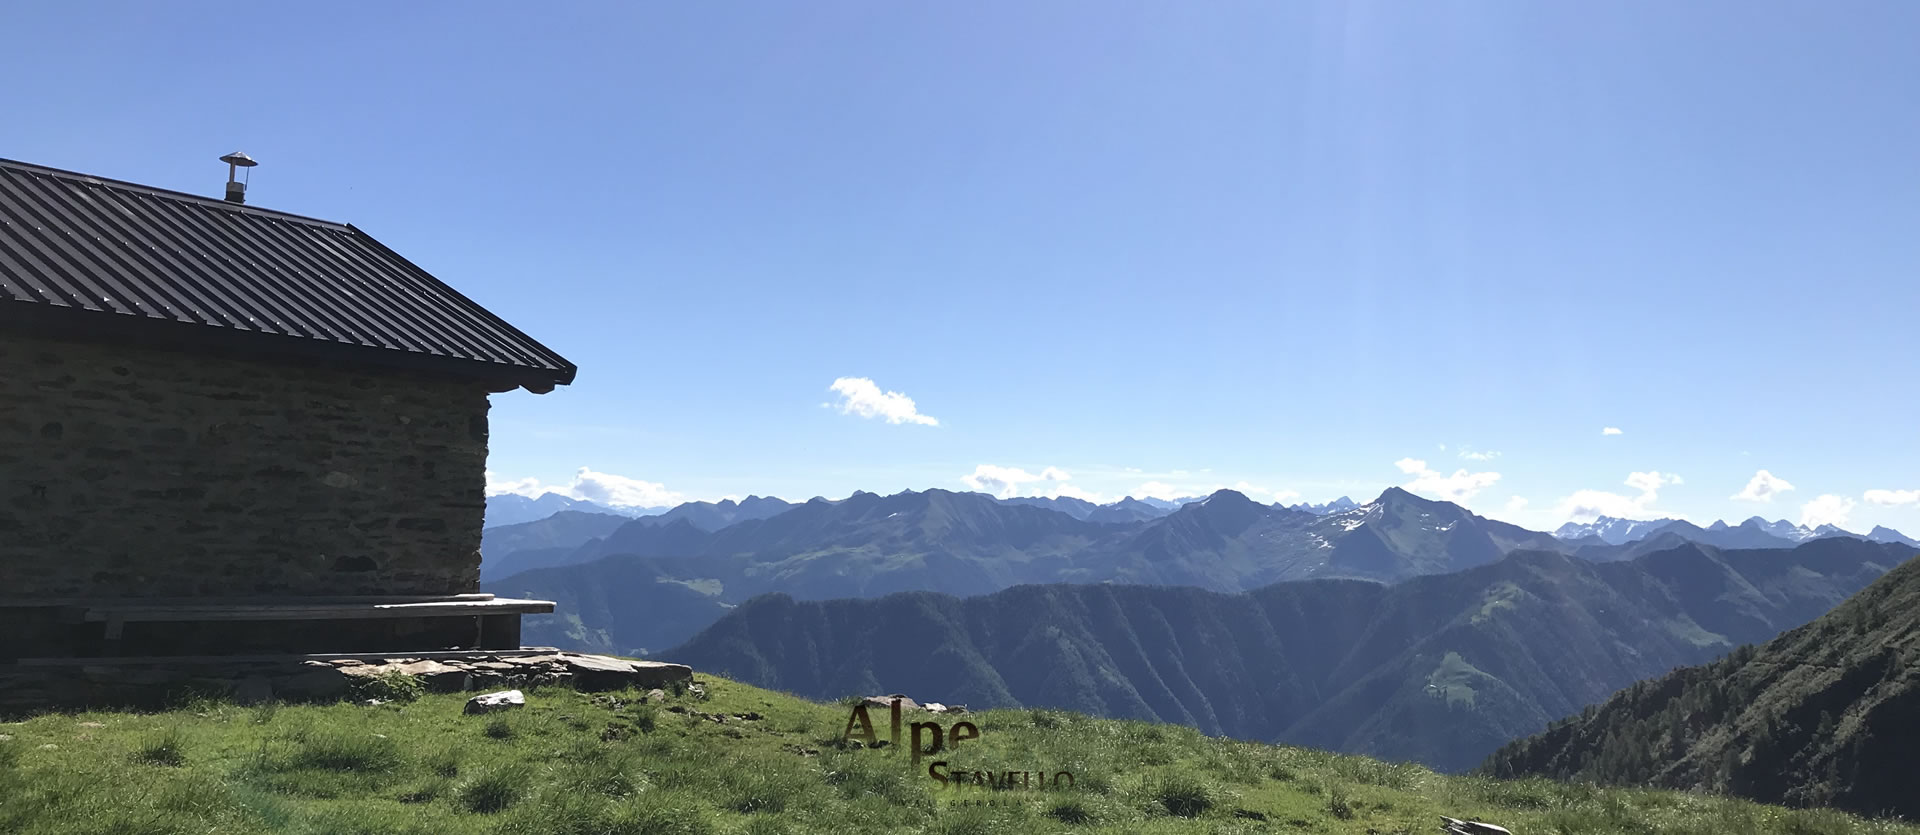 Baita Tuono - l'alpeggio - Alpe Stavello